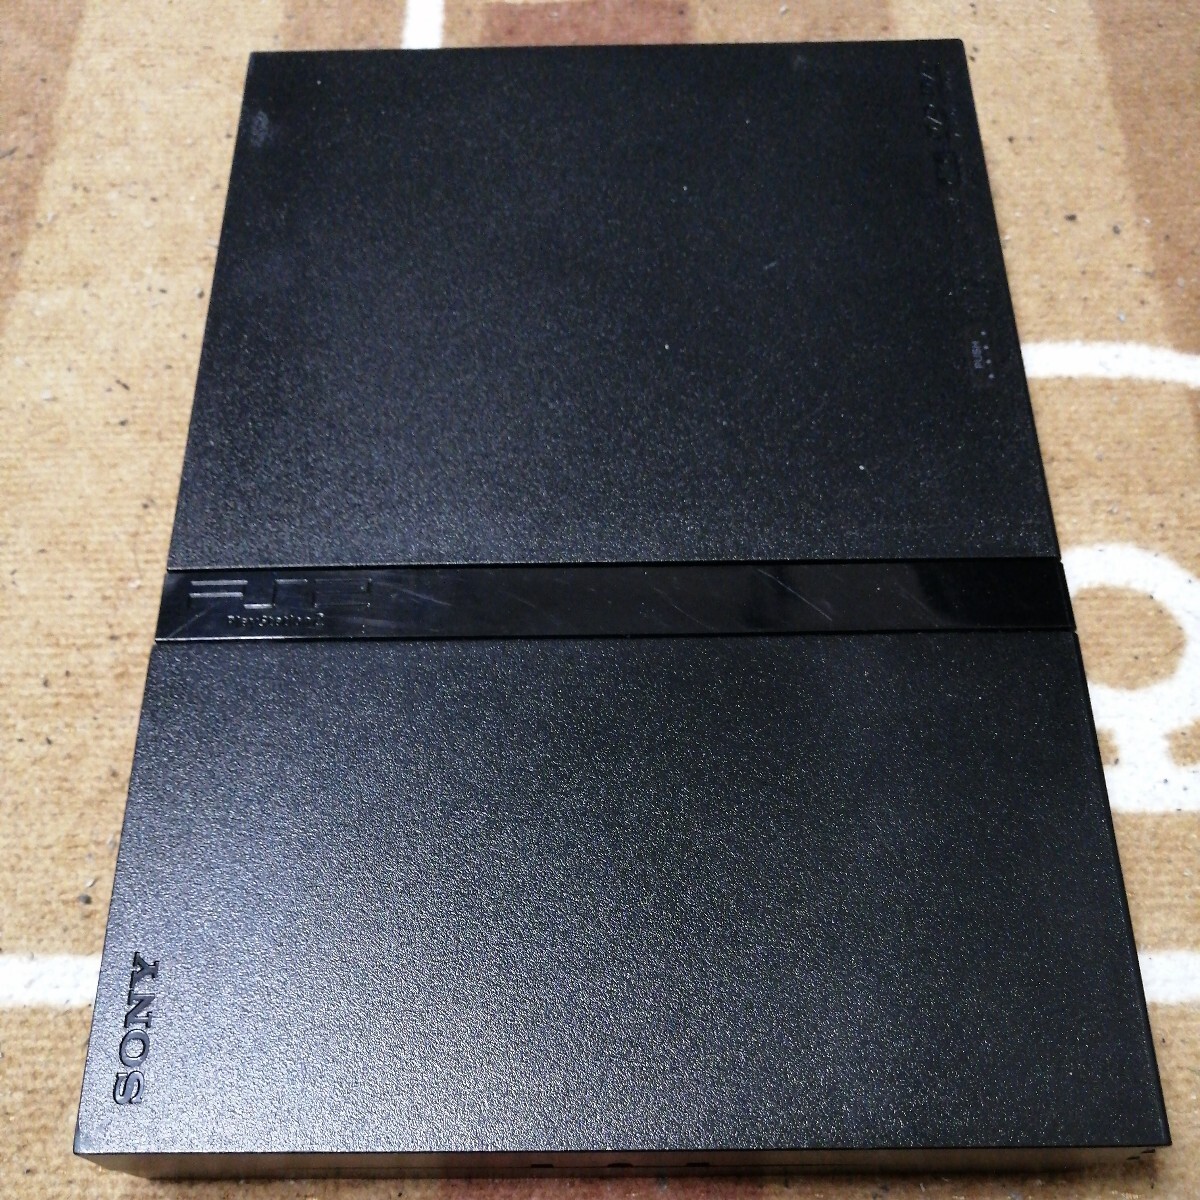 ジャンク品 SONY ソニー PS2 PlayStation2 プレイステーション2 SCPH 70000 ブラック 黒 PS1ソフト動作確認 PS2ソフト動作不可_画像1